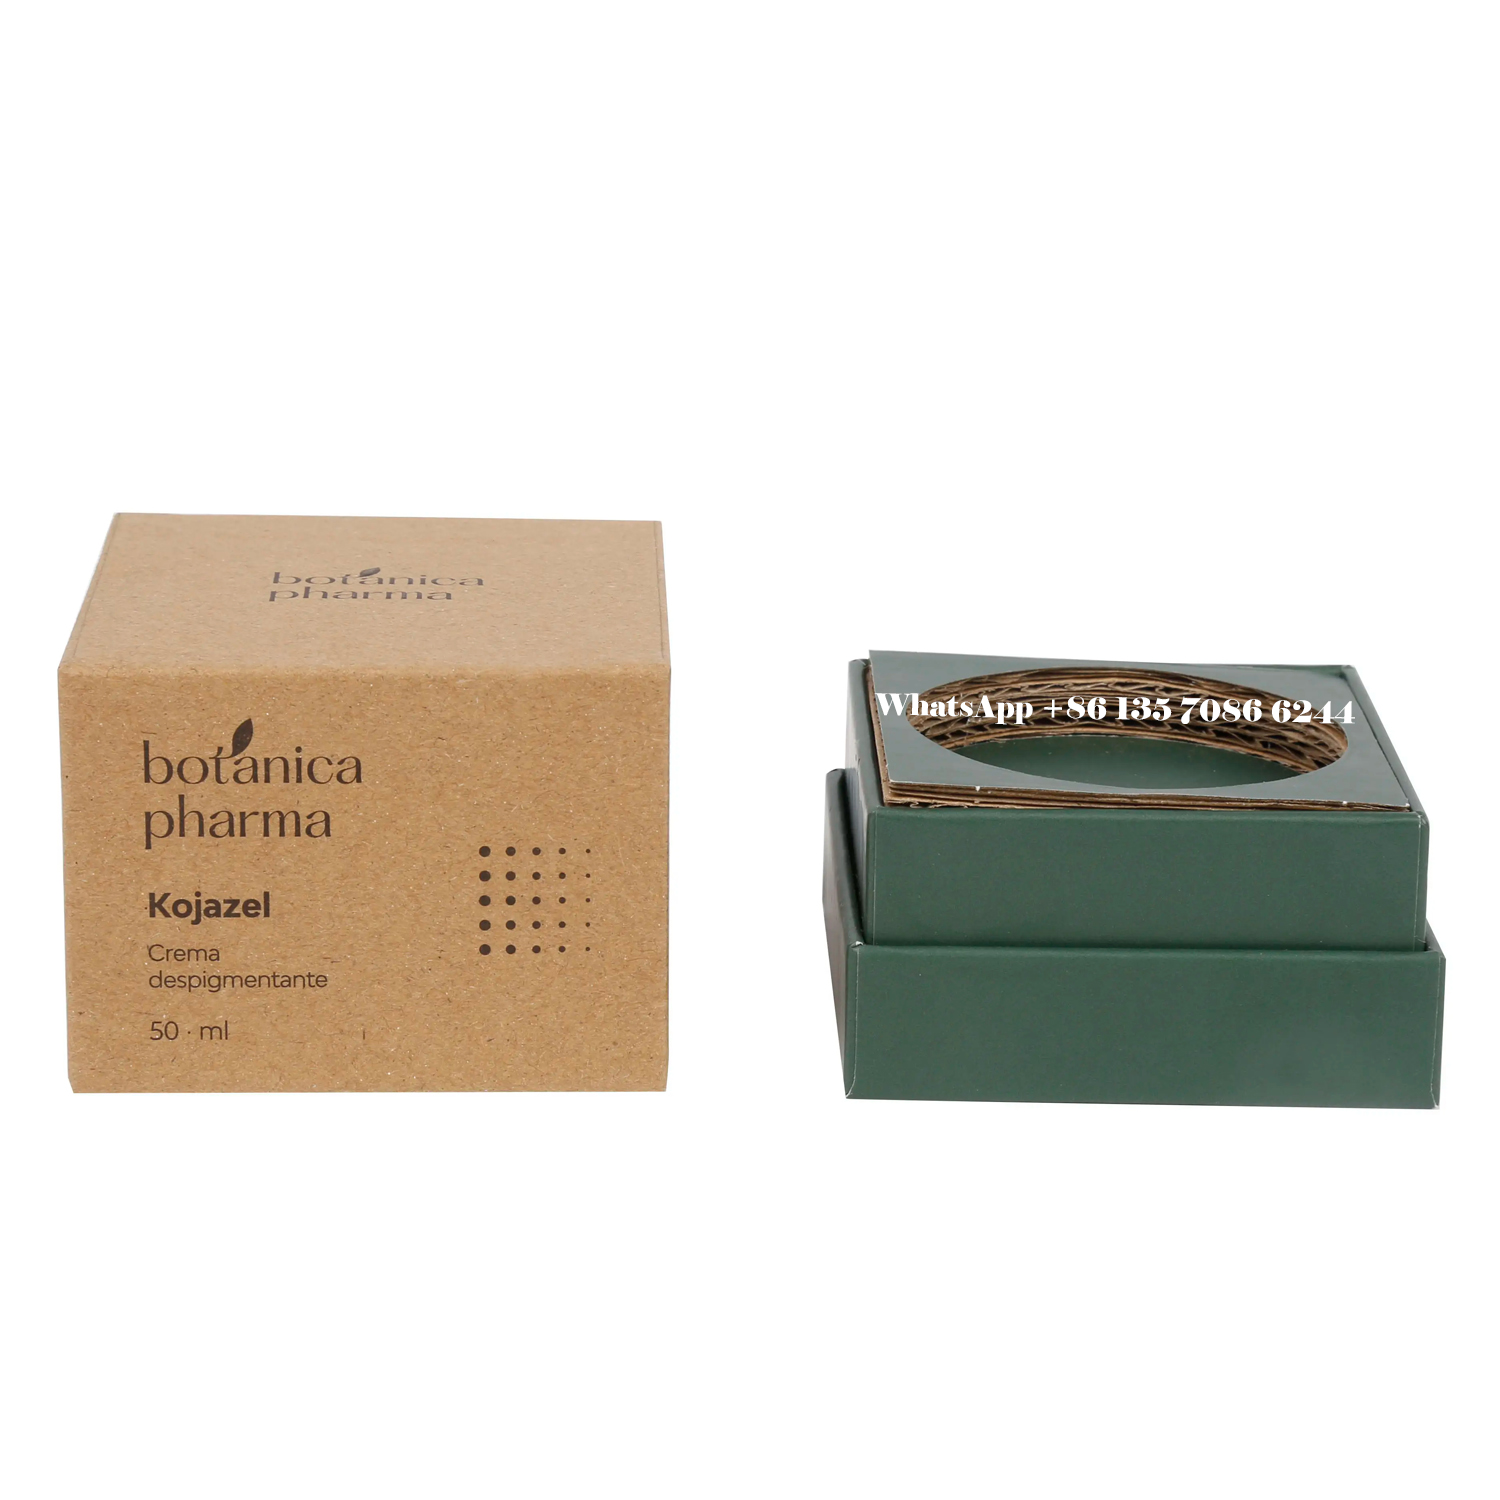  カスタム印刷された化粧品ボックス、特注の美容製品パッケージング  